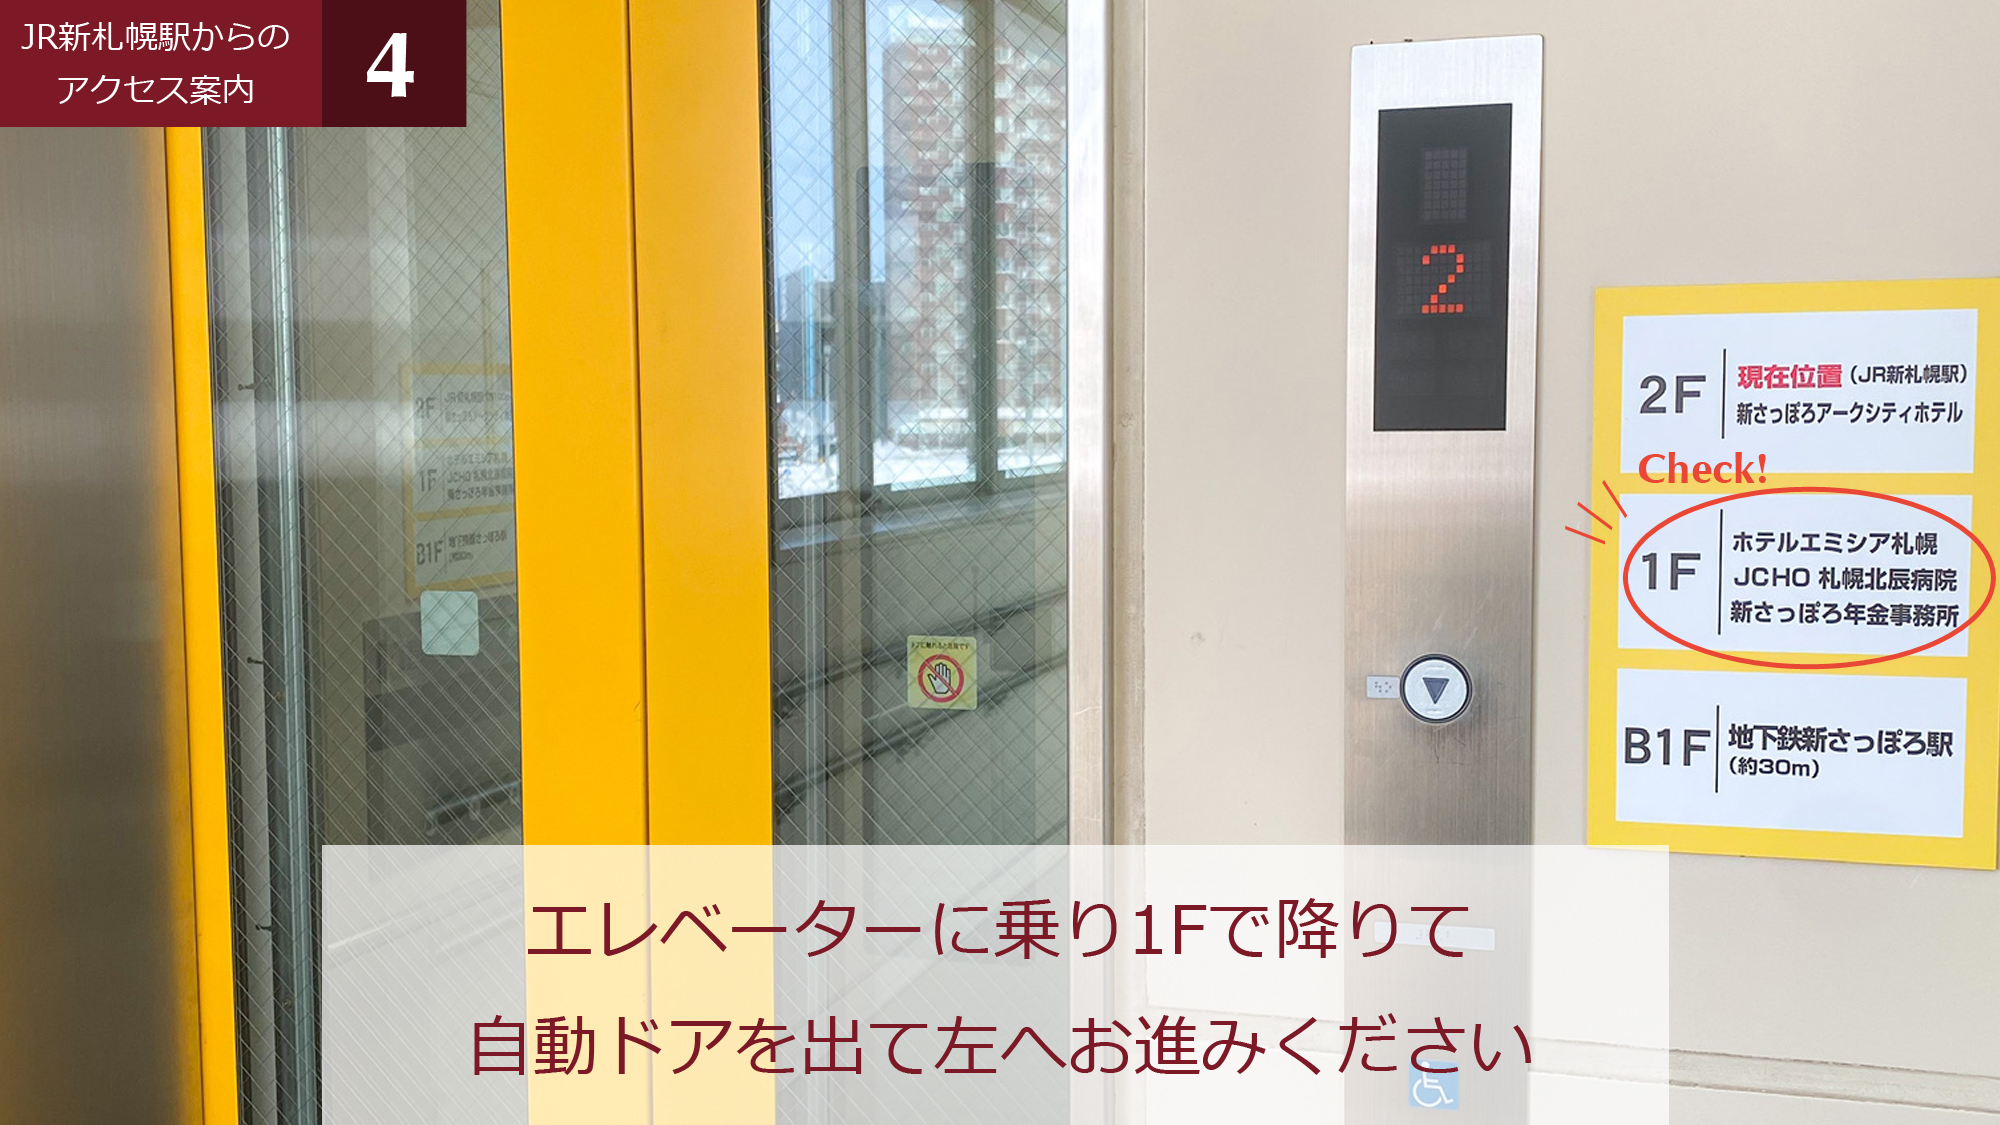 ④エレベーターで１階へ降り、自動ドアを出て左へ。